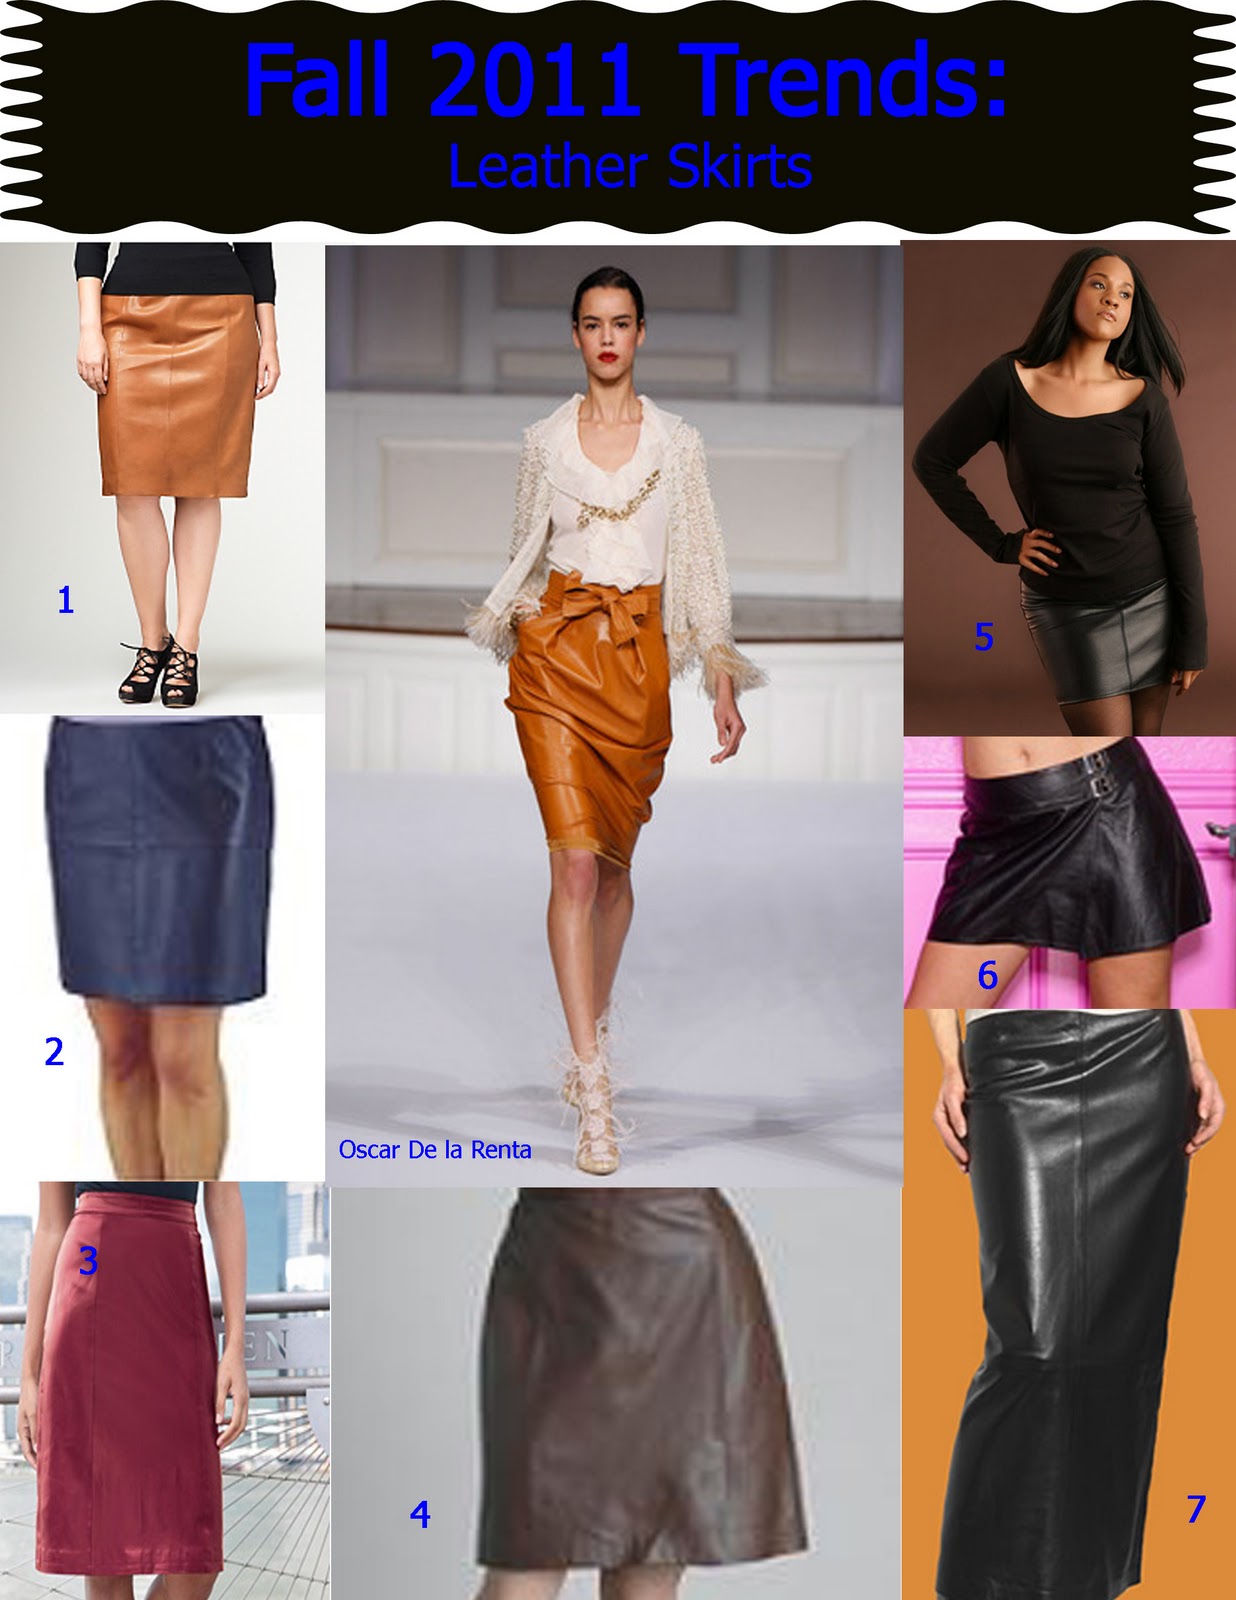 http://3.bp.blogspot.com/-9q4_FD7h7zo/TnylZgaQprI/AAAAAAAAI7w/rXTJa9JiMiY/s1600/leather+skirts.jpg